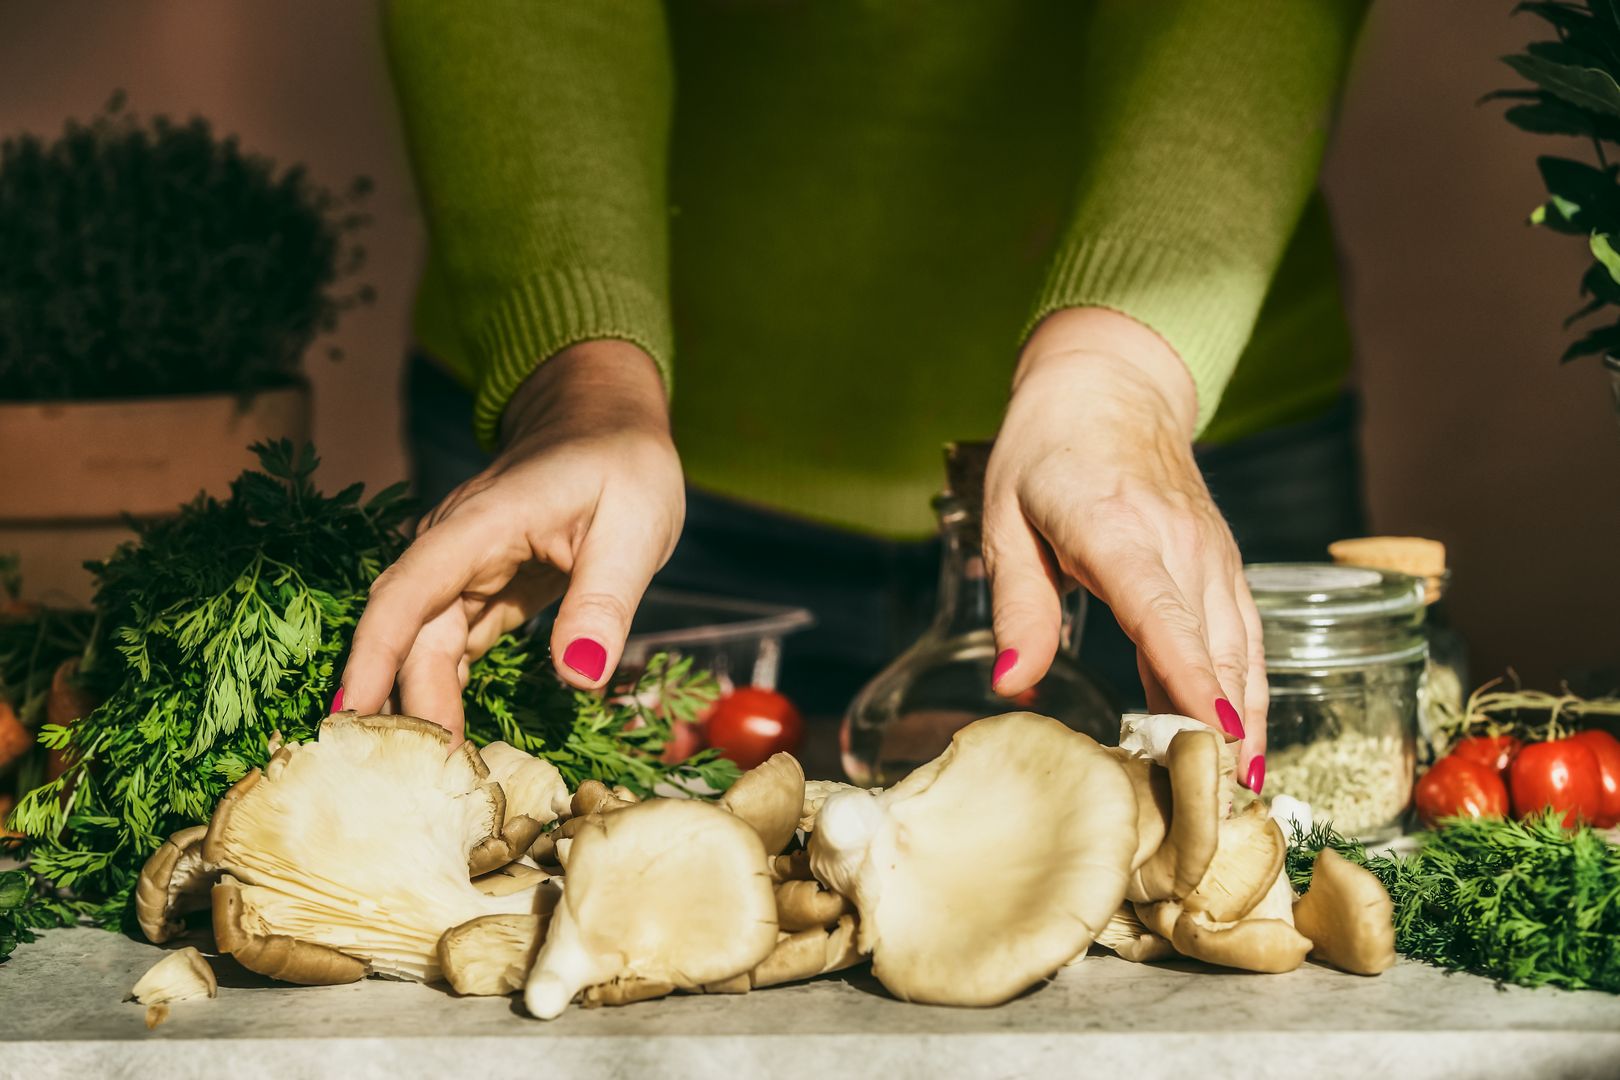 Uprawa grzybów w domu — co trzeba wiedzieć?